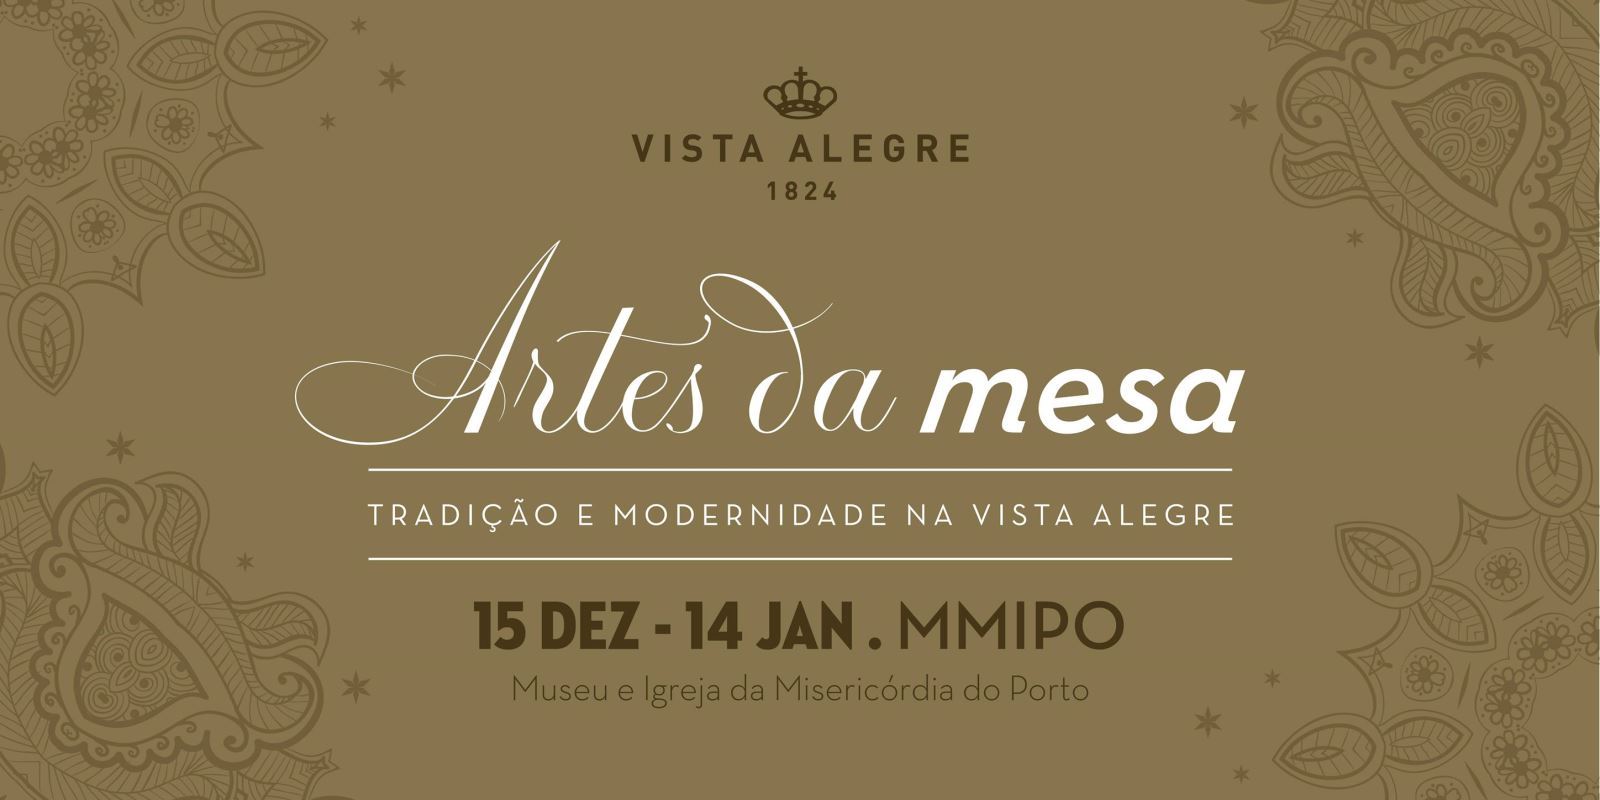 Porto | ‘Tradição e Modernidade na Vista Alegre’ em exposição 